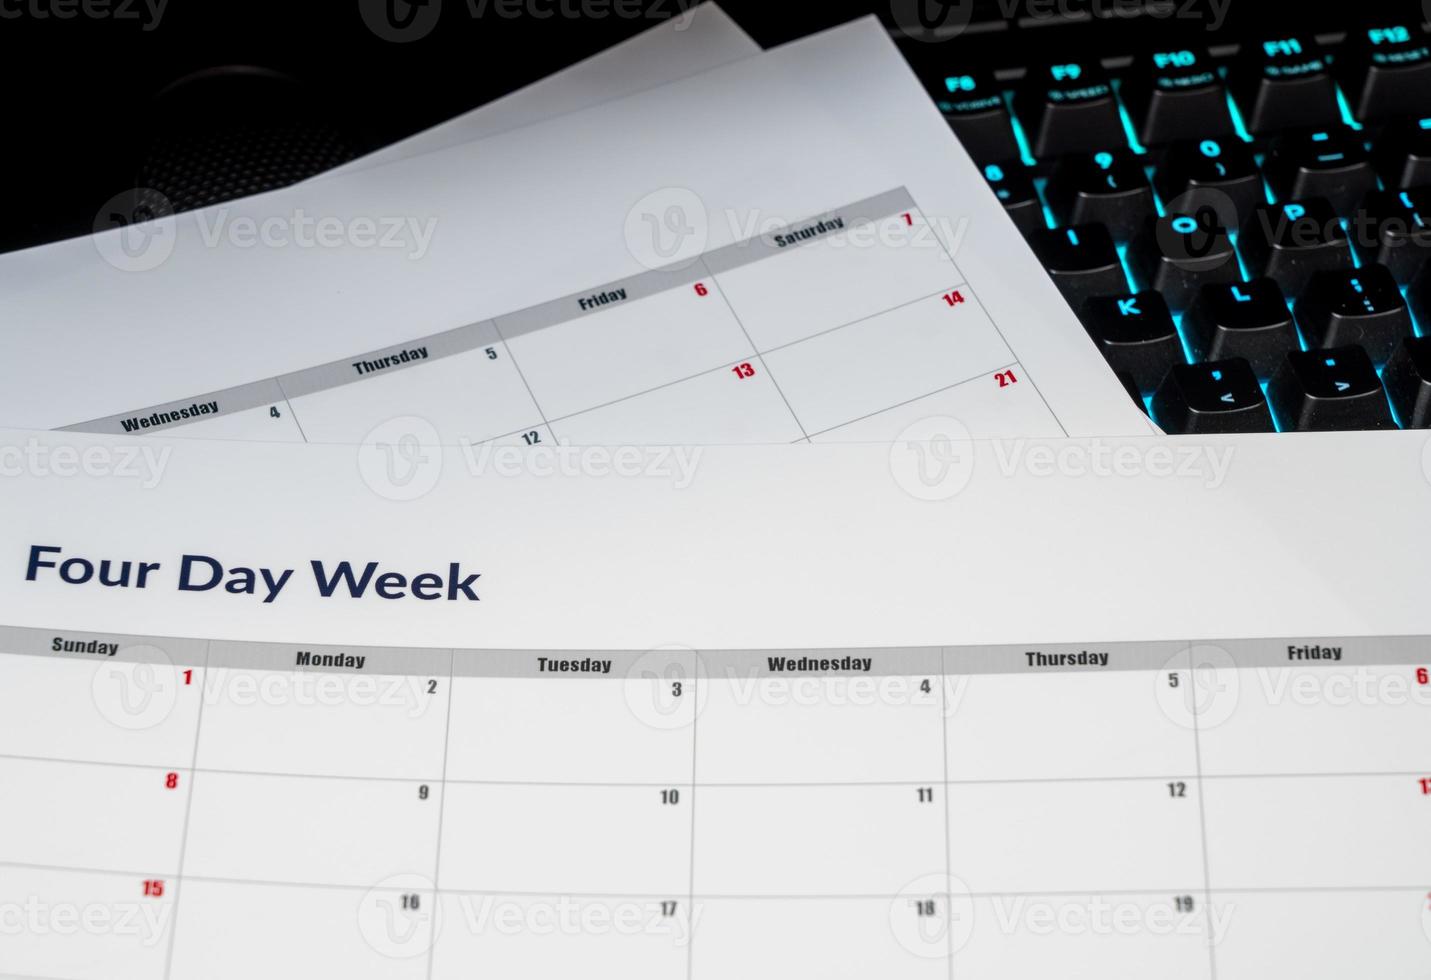 kalender die een vierdaagse werkweek illustreert waarbij vrijdag een vakantiedag is foto